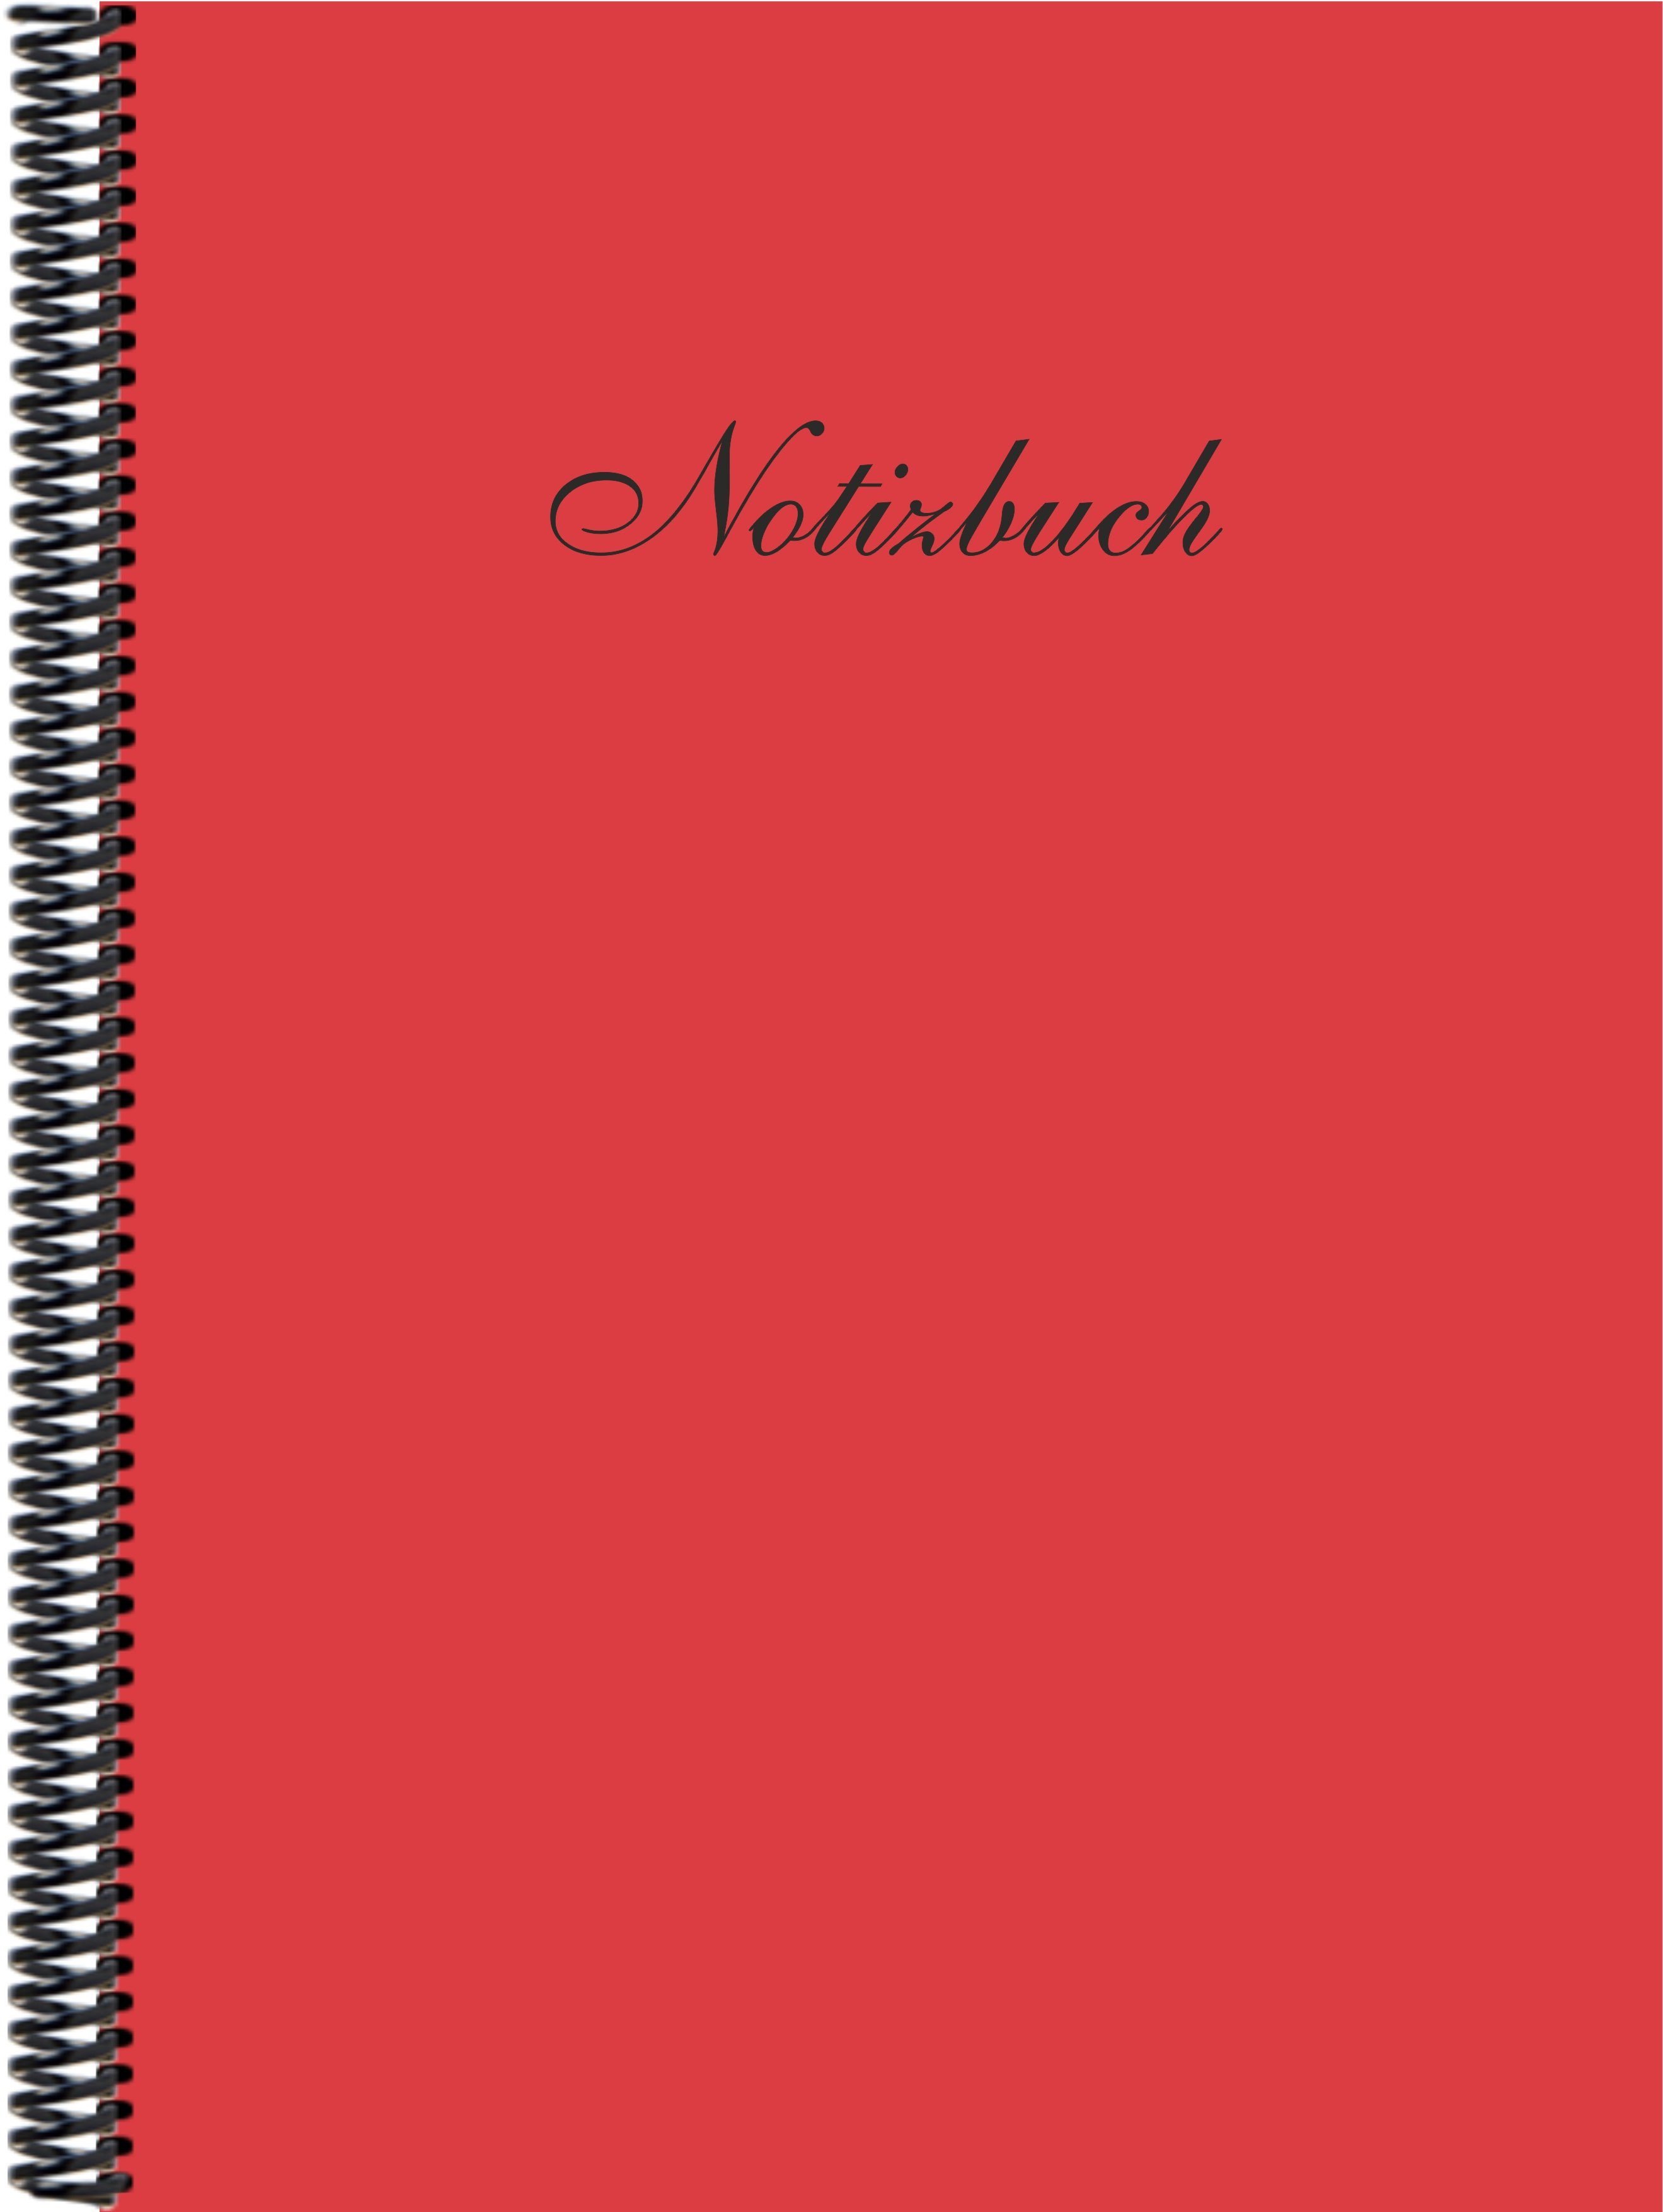 Notizbuch Verlag hibiscus Gmbh liniert, E&Z Notizbuch der in Trendfarbe DINA4